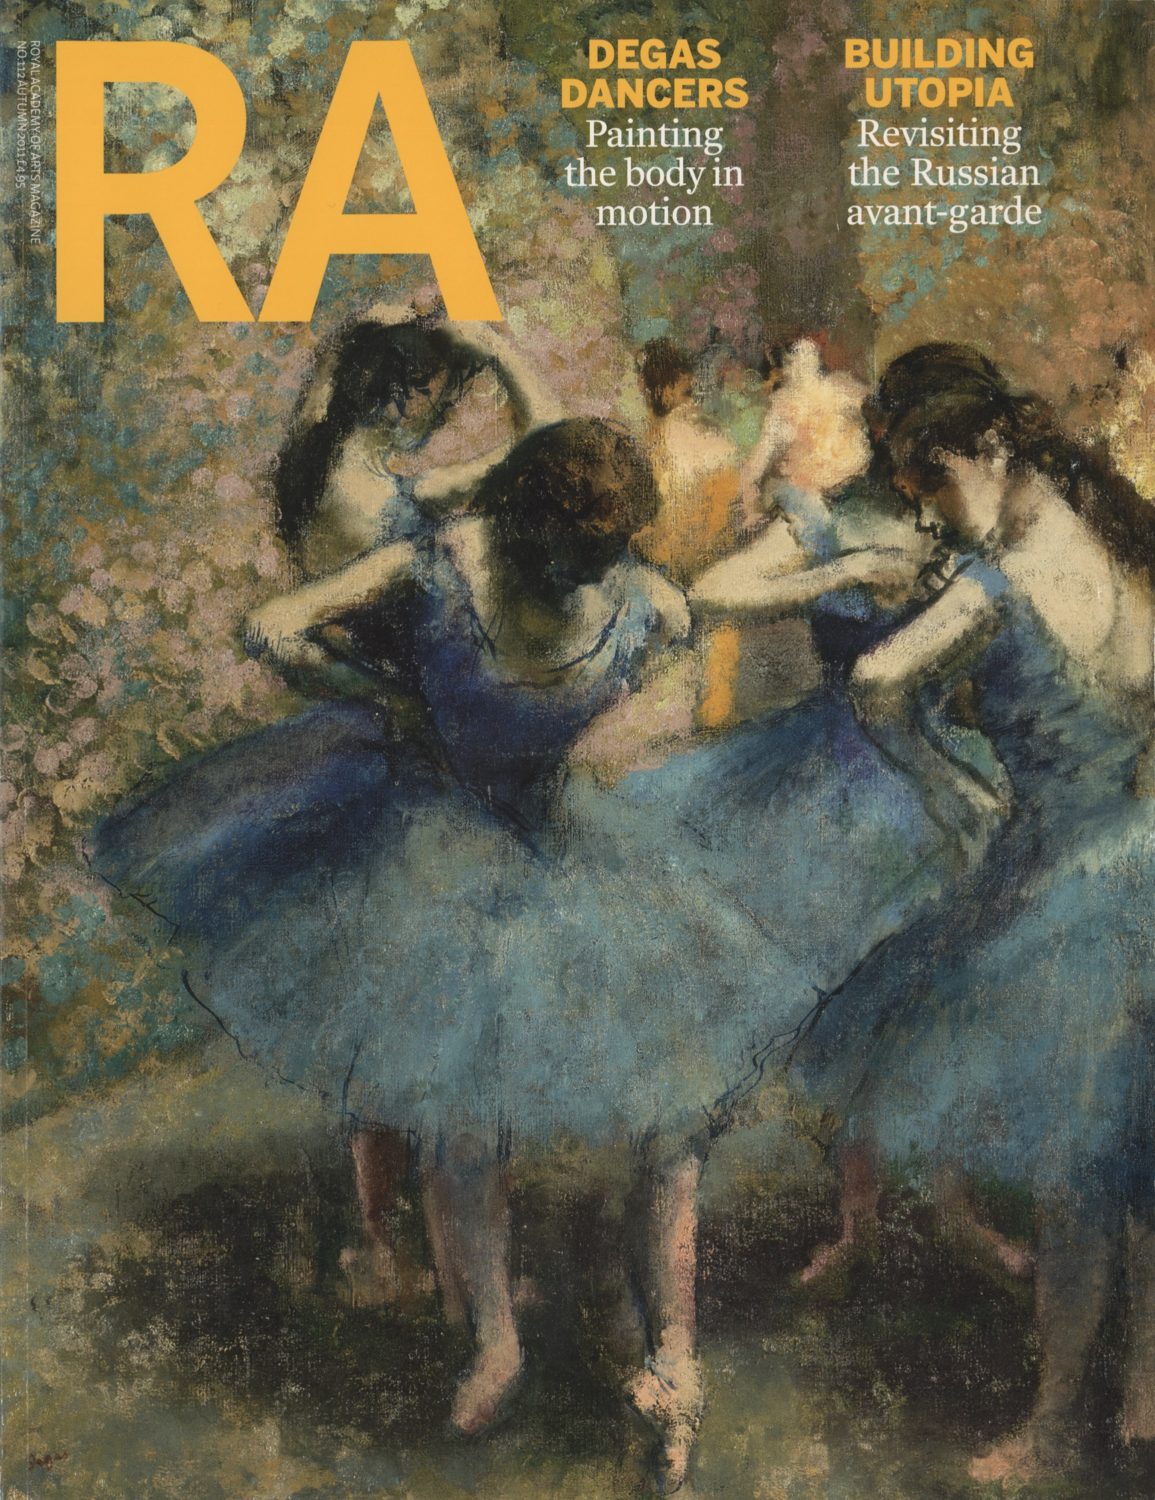 RA Magazine, Autumn, 2011